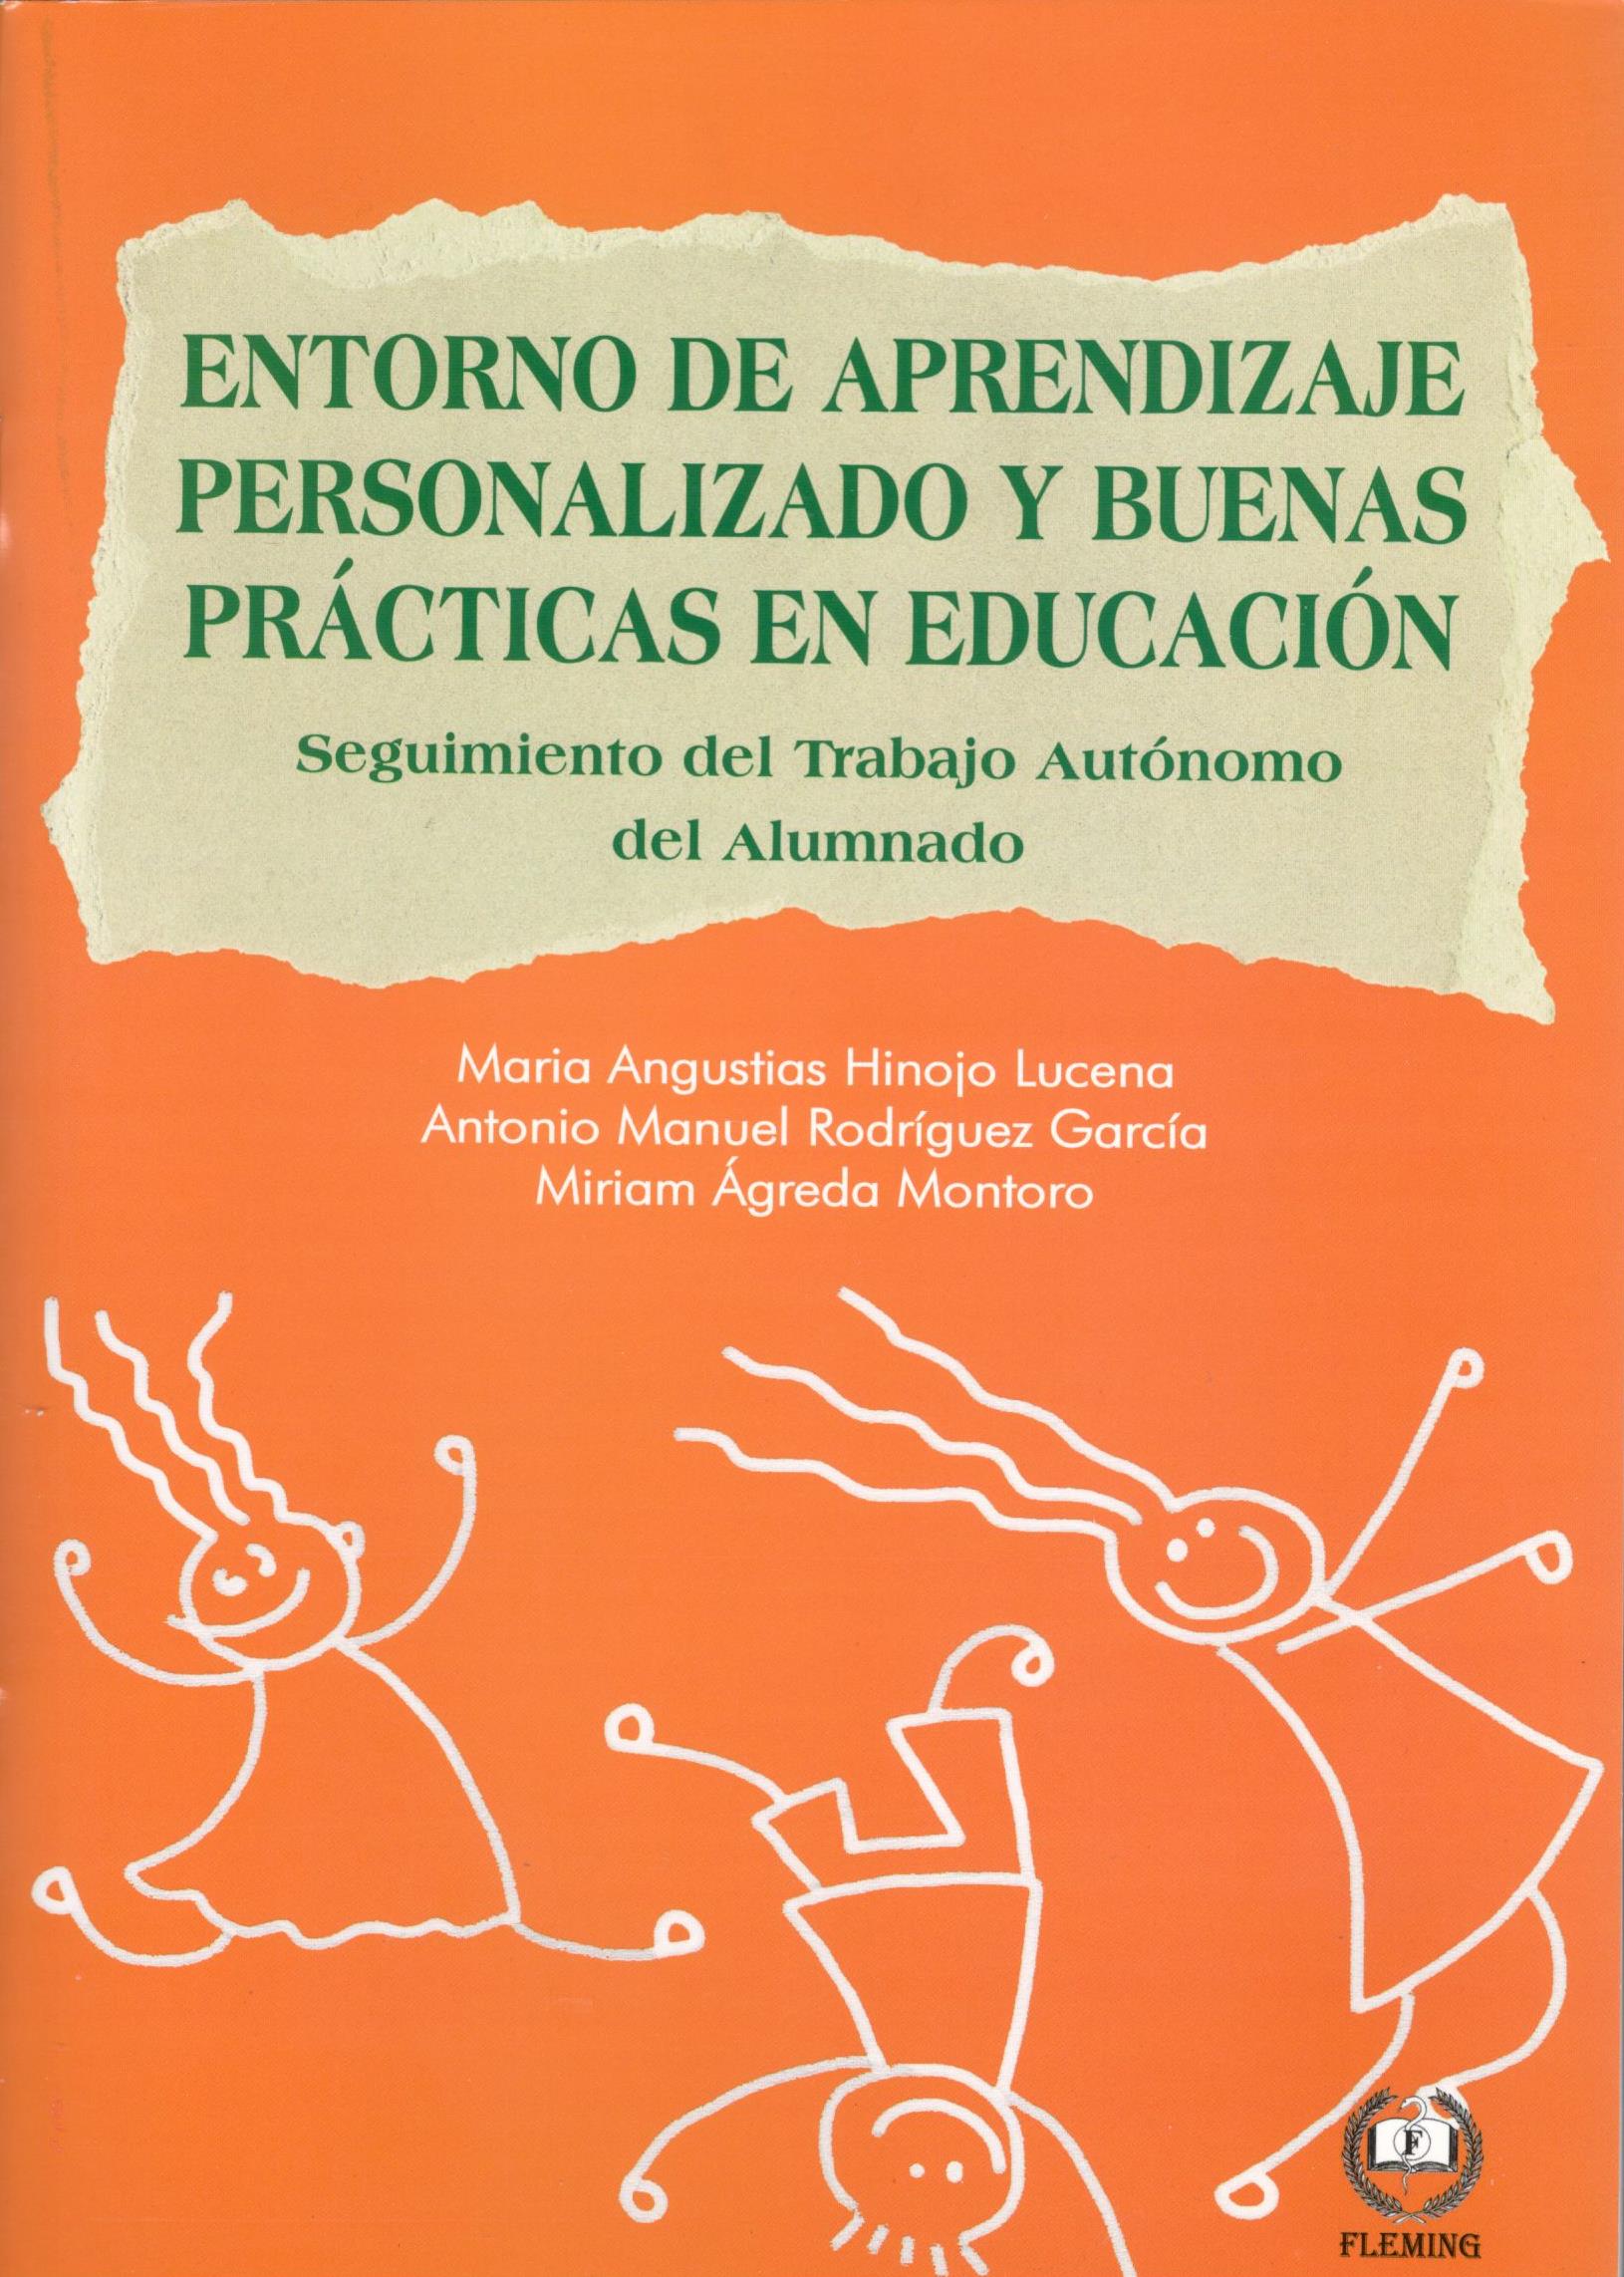 ENTORNO DE APRENDIZAJE PERSONALIZADO Y BUENAS PRACTICAS EN EDUCACION